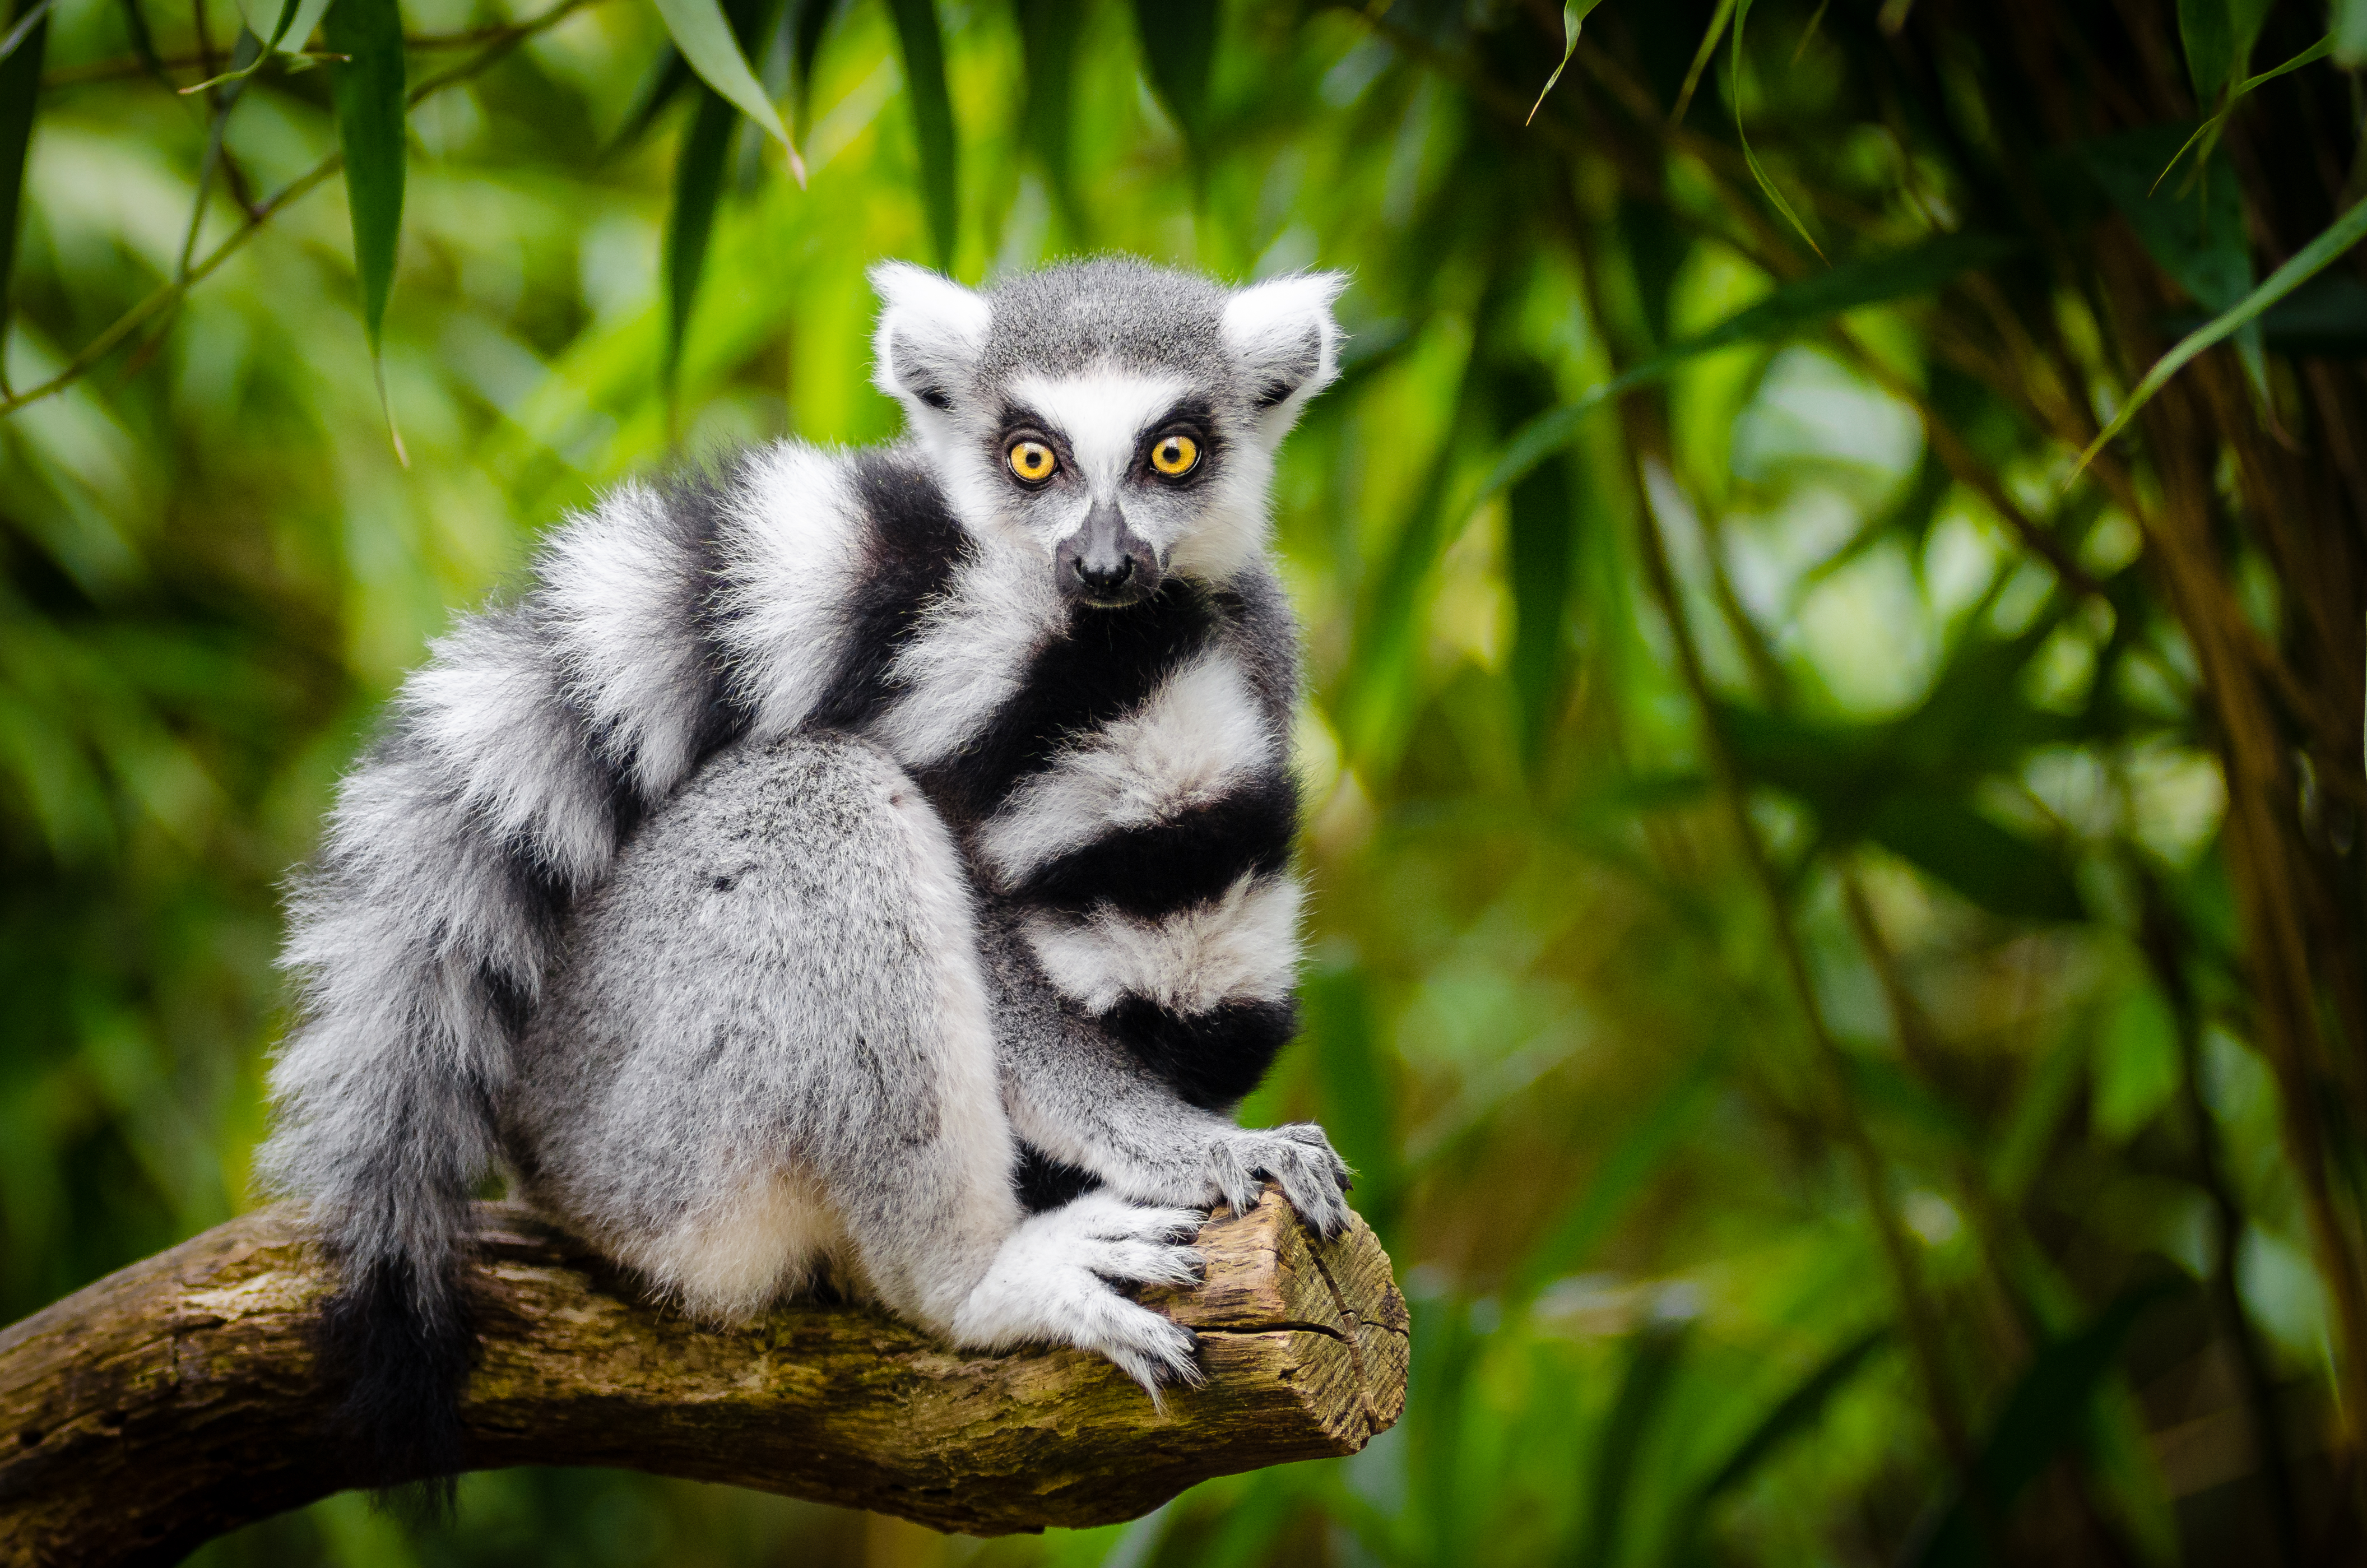 lemur cu coadă inelară pe cale de dispariție